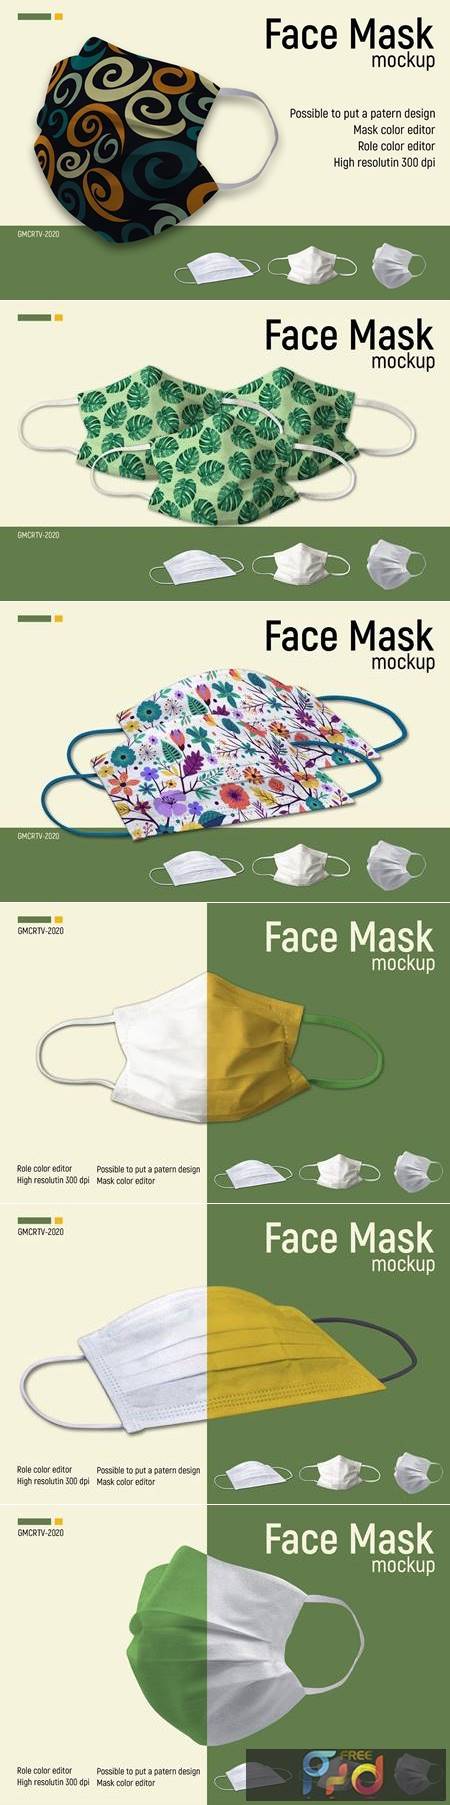 Face Mask Mockup Vr2